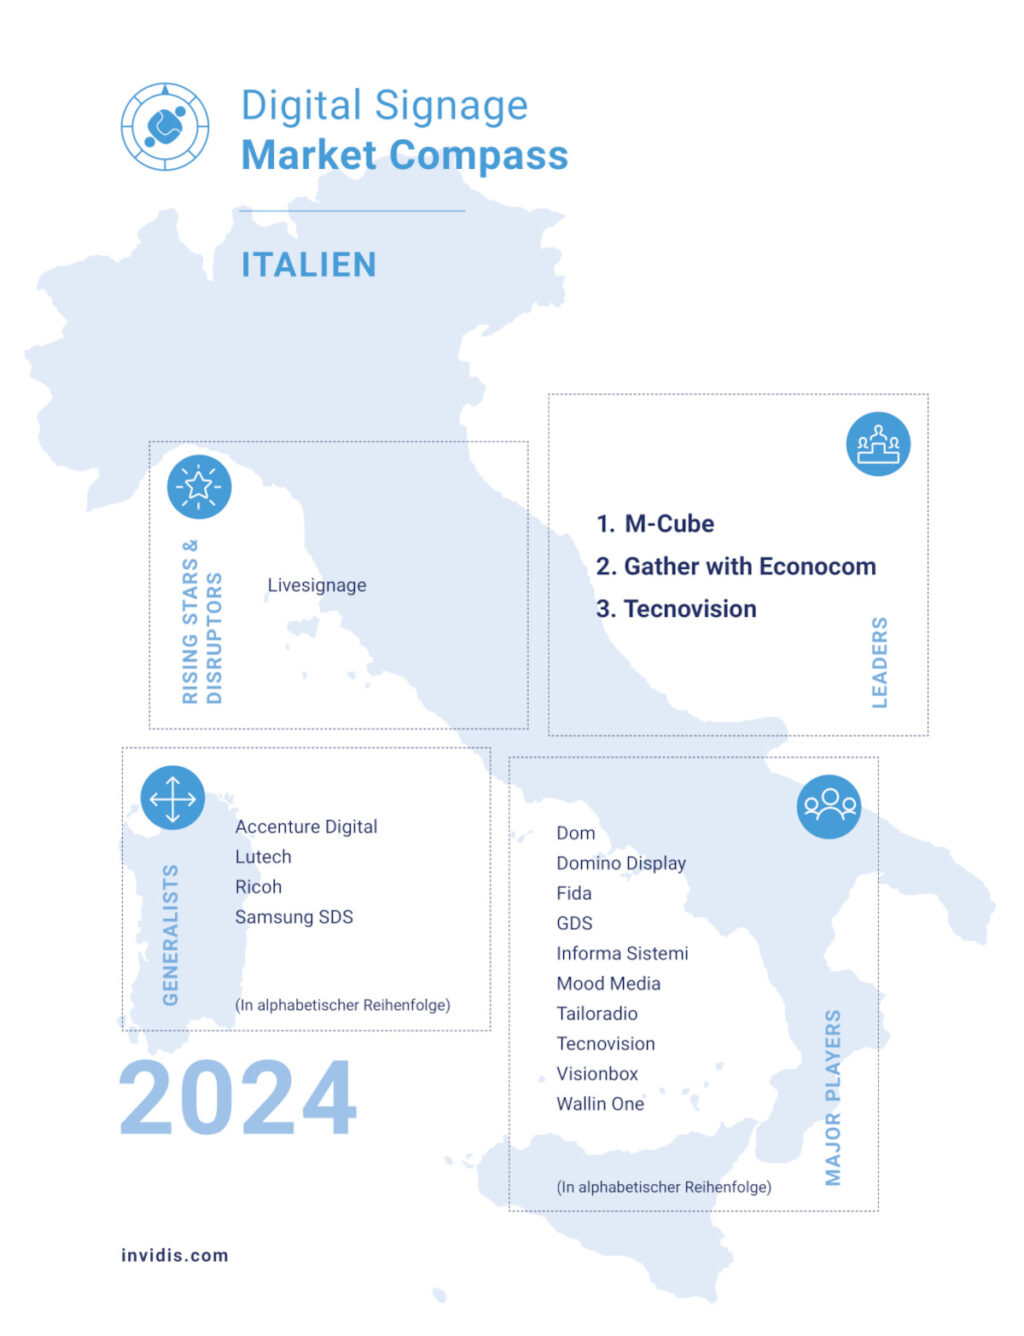 Der invidis Digital Signage Market Compass 2024 für Italien (Bild: invidis)